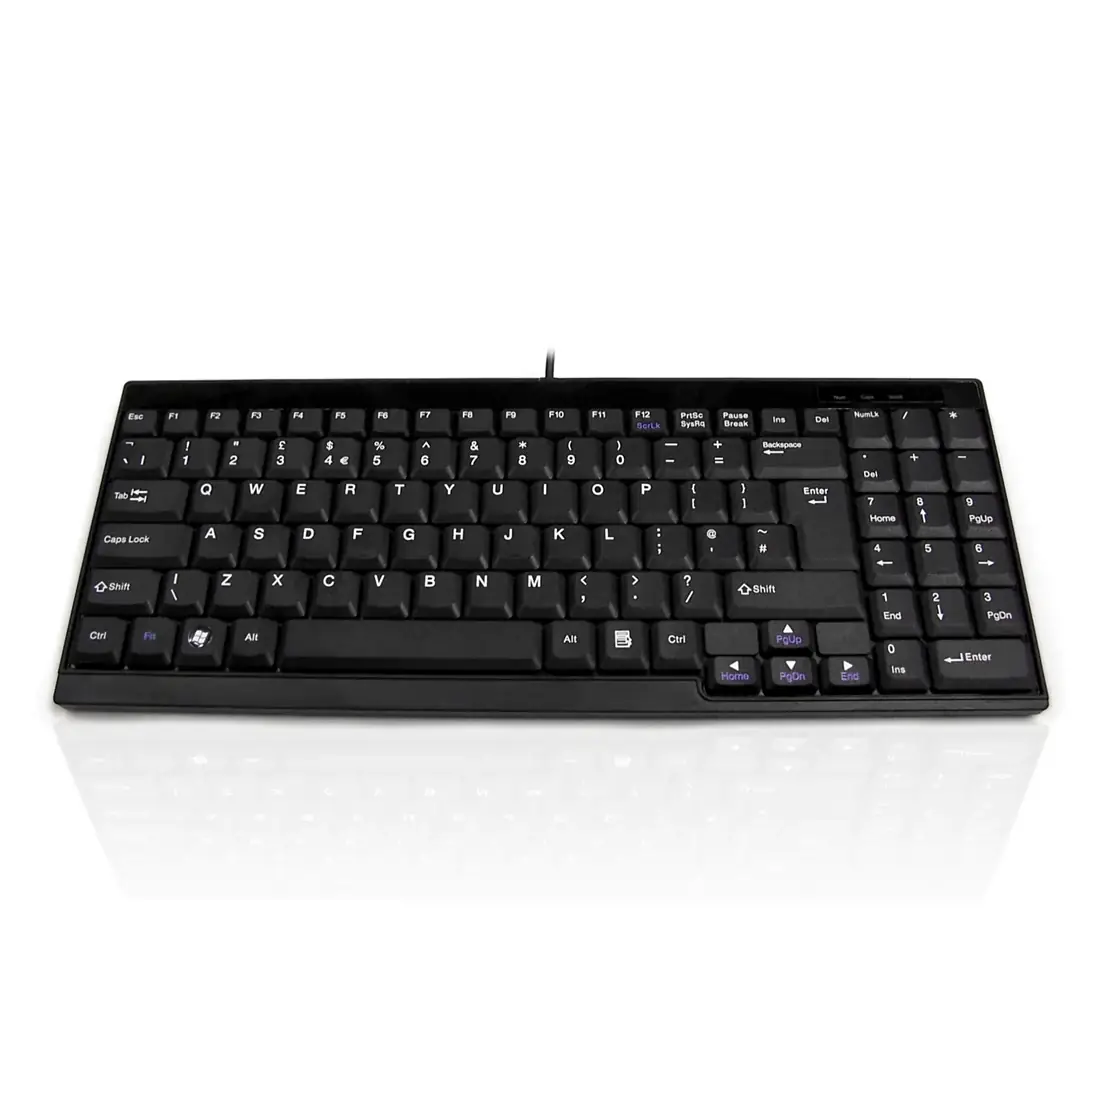 Ceratech 8265 Keyboard